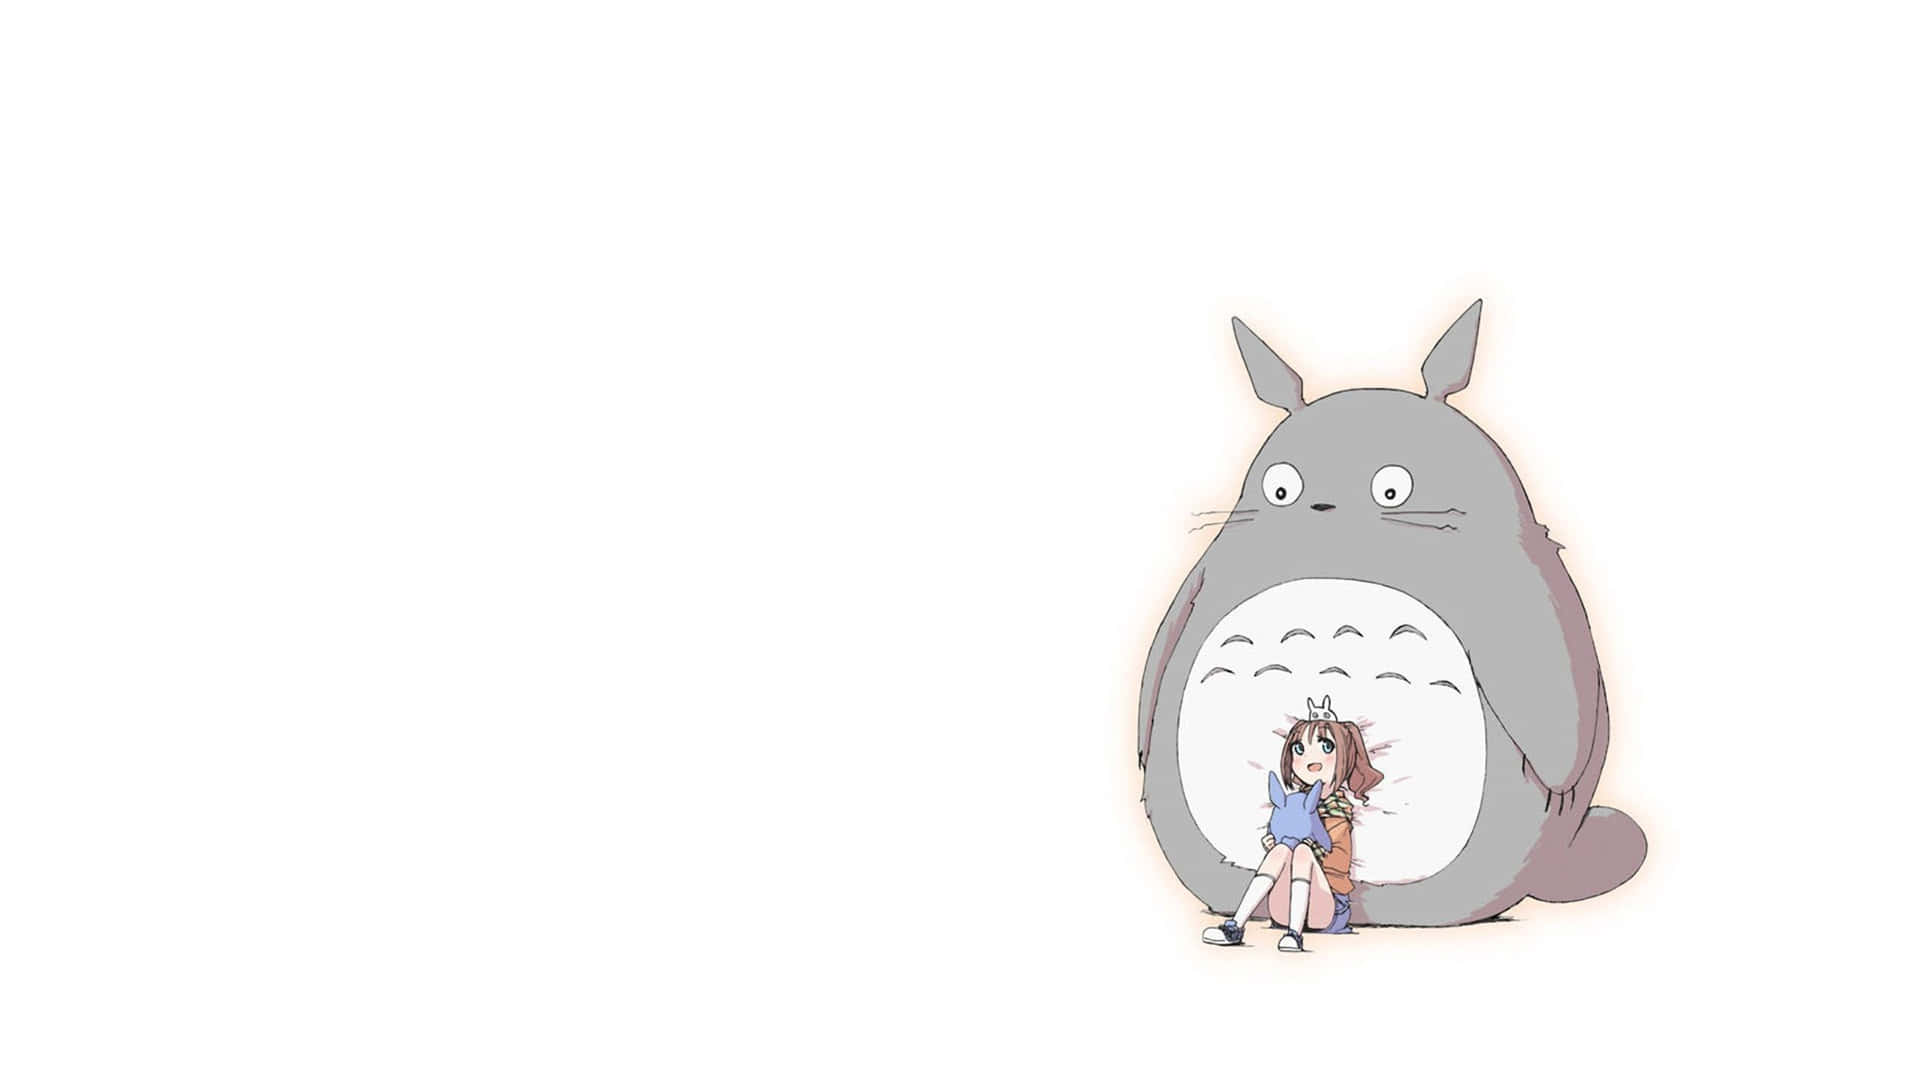 Blivfortabt I Skoven Med Totoro.